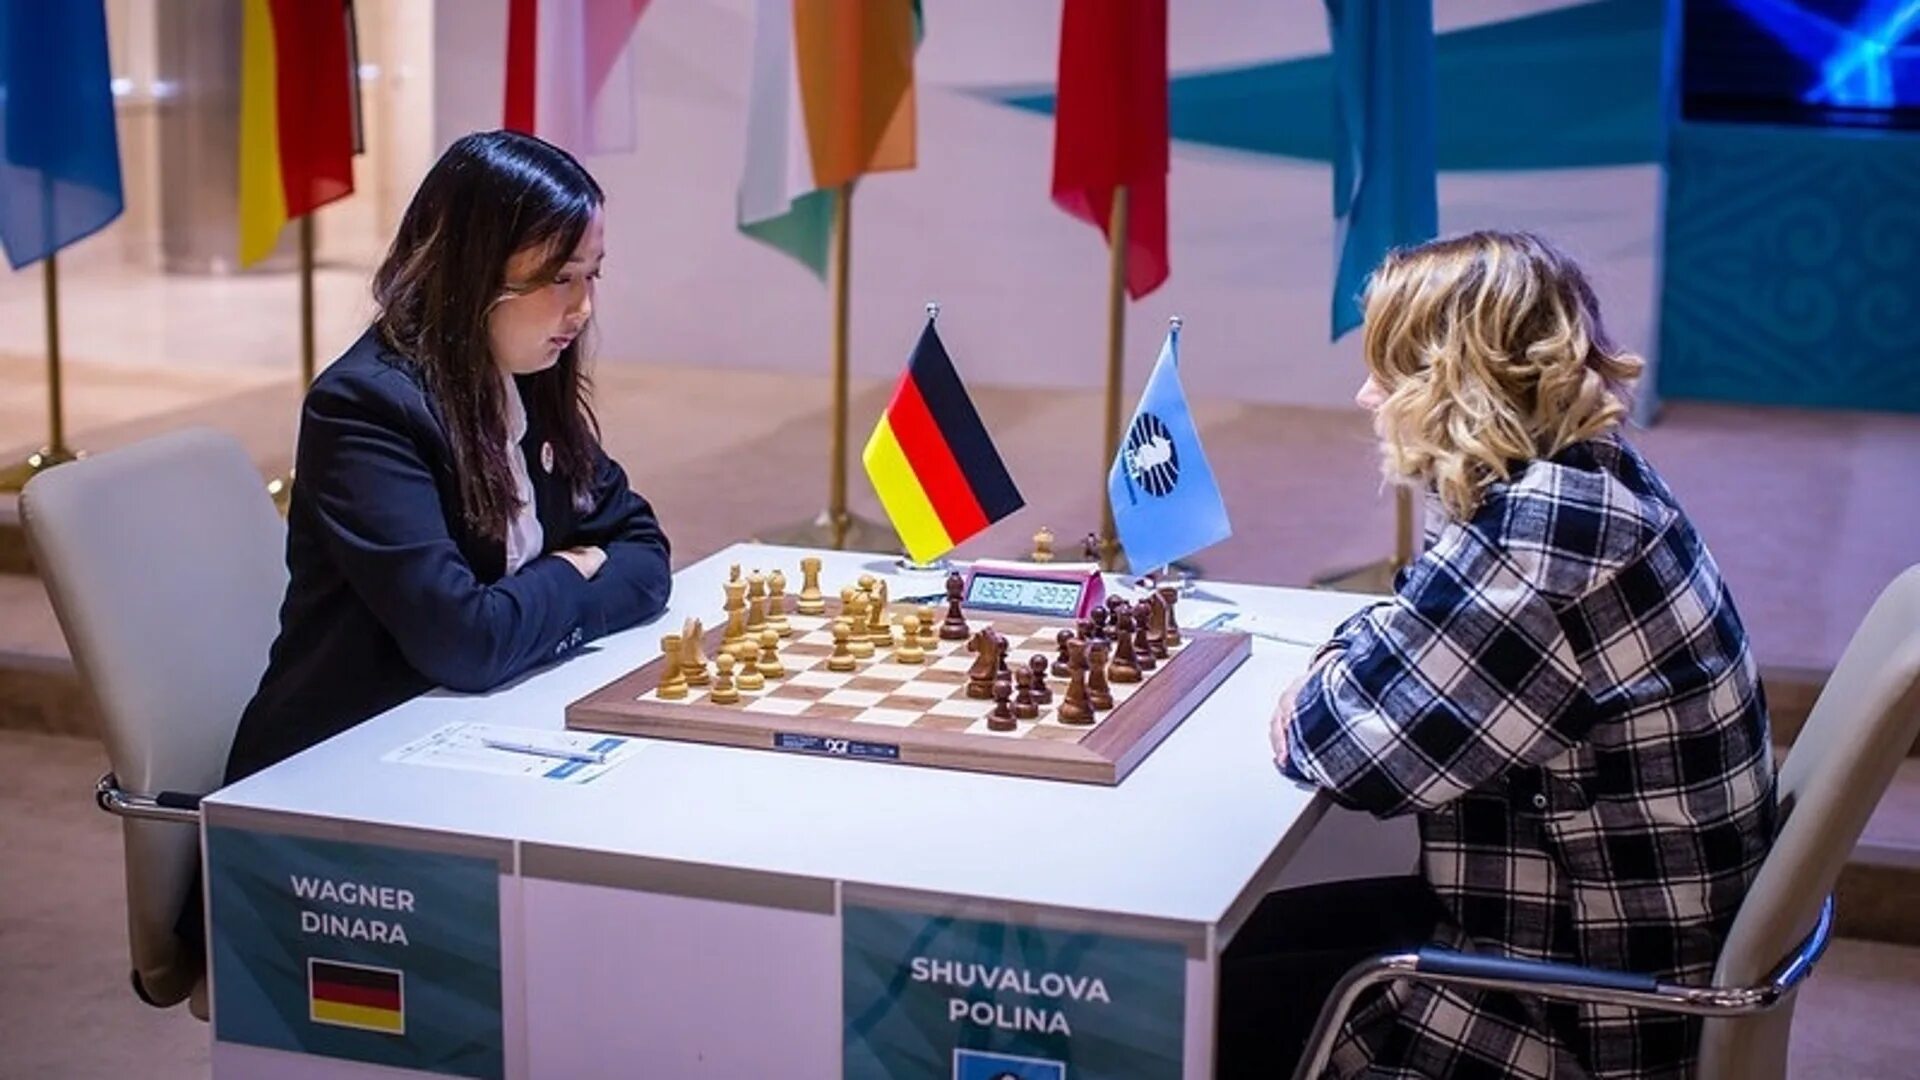 Шахматный турнир в Москве 2022. Россия США шахматы. Россия мои горизонты 10 апреля 2024